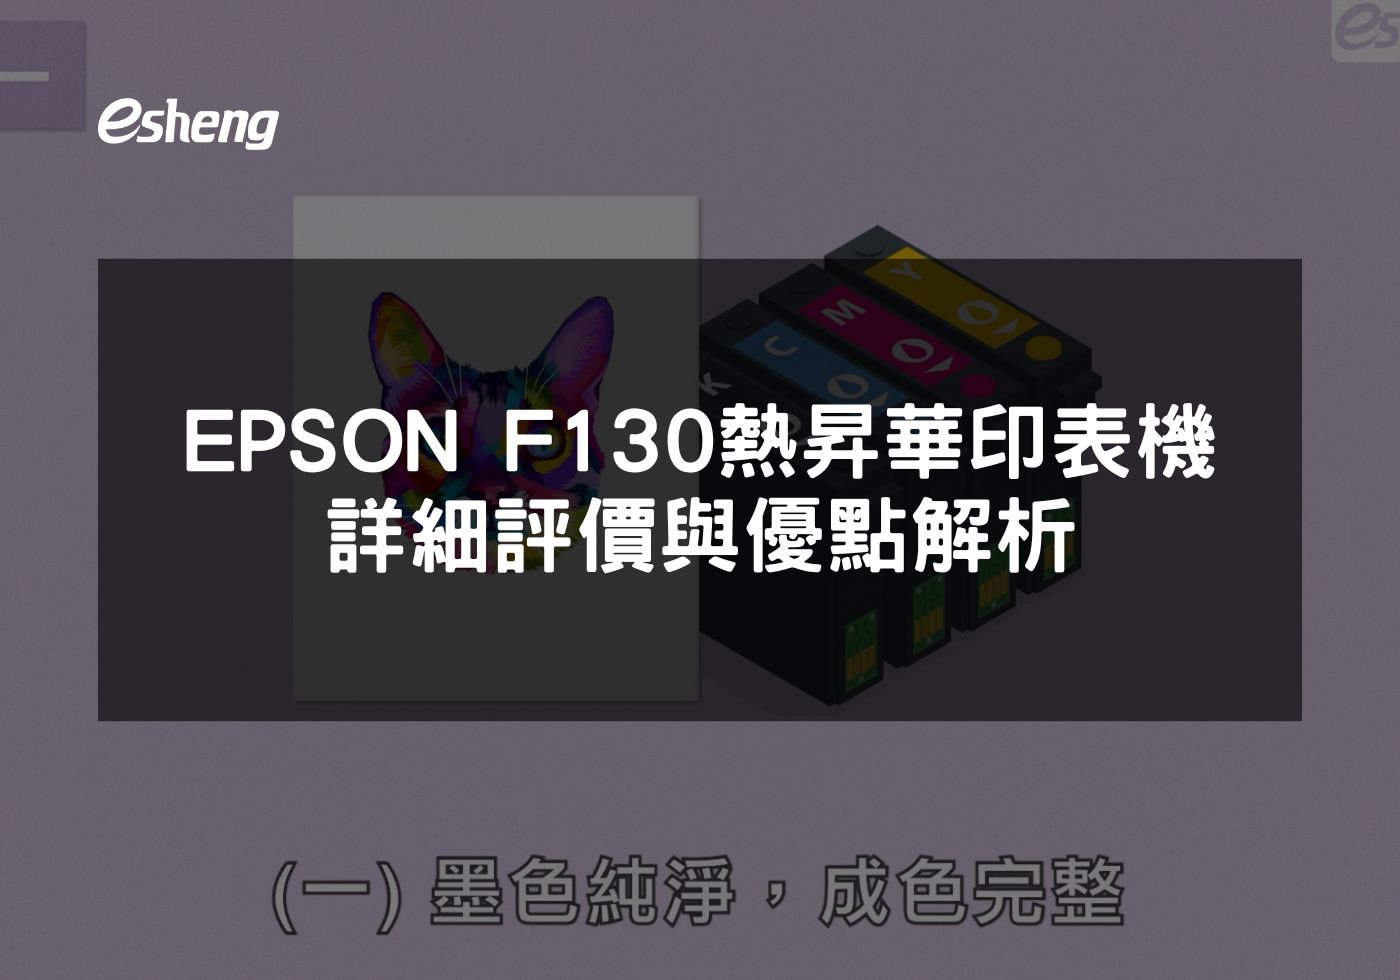 EPSON F130印表機 經濟實惠與環保相結合的列印解決方案